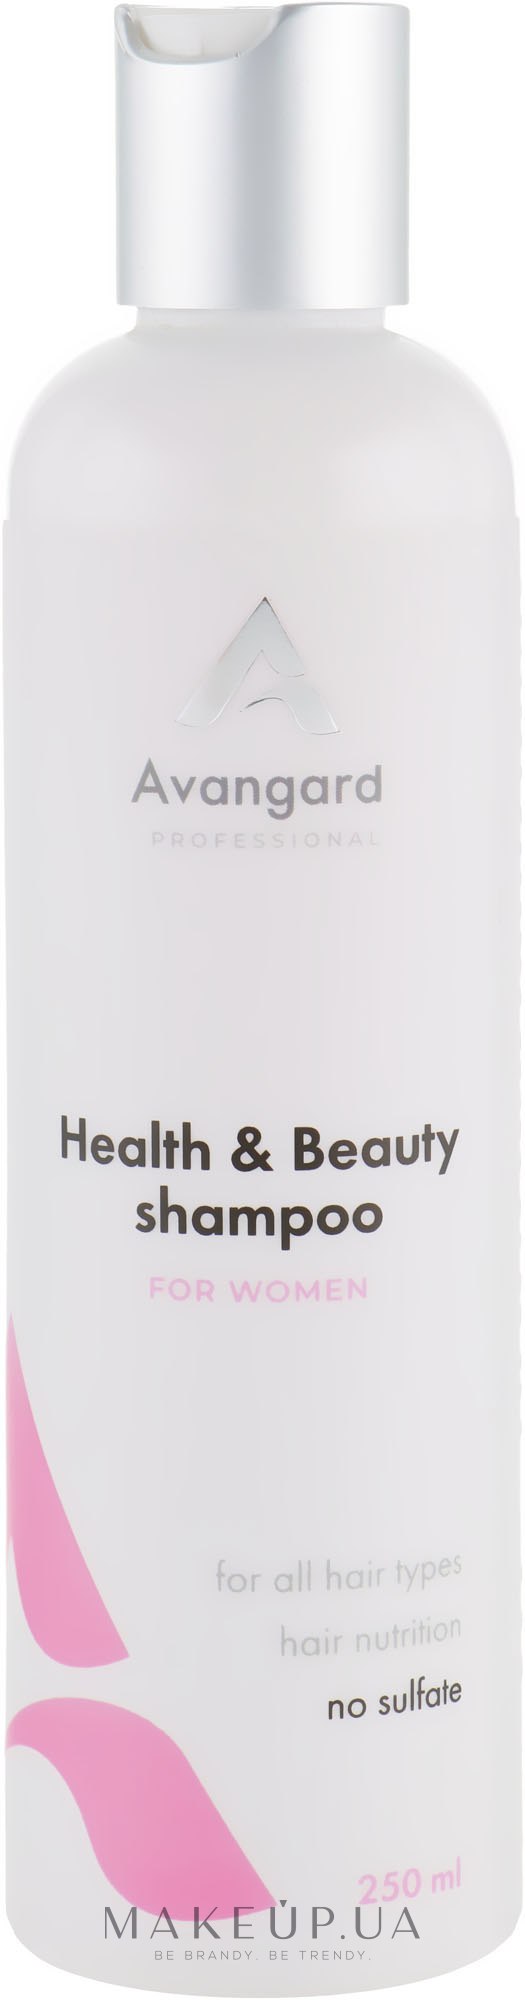 Профессиональный шампунь для ежедневного ухода за женскими волосами - Avangard Professional Health & Beauty Shampoo — фото 250ml